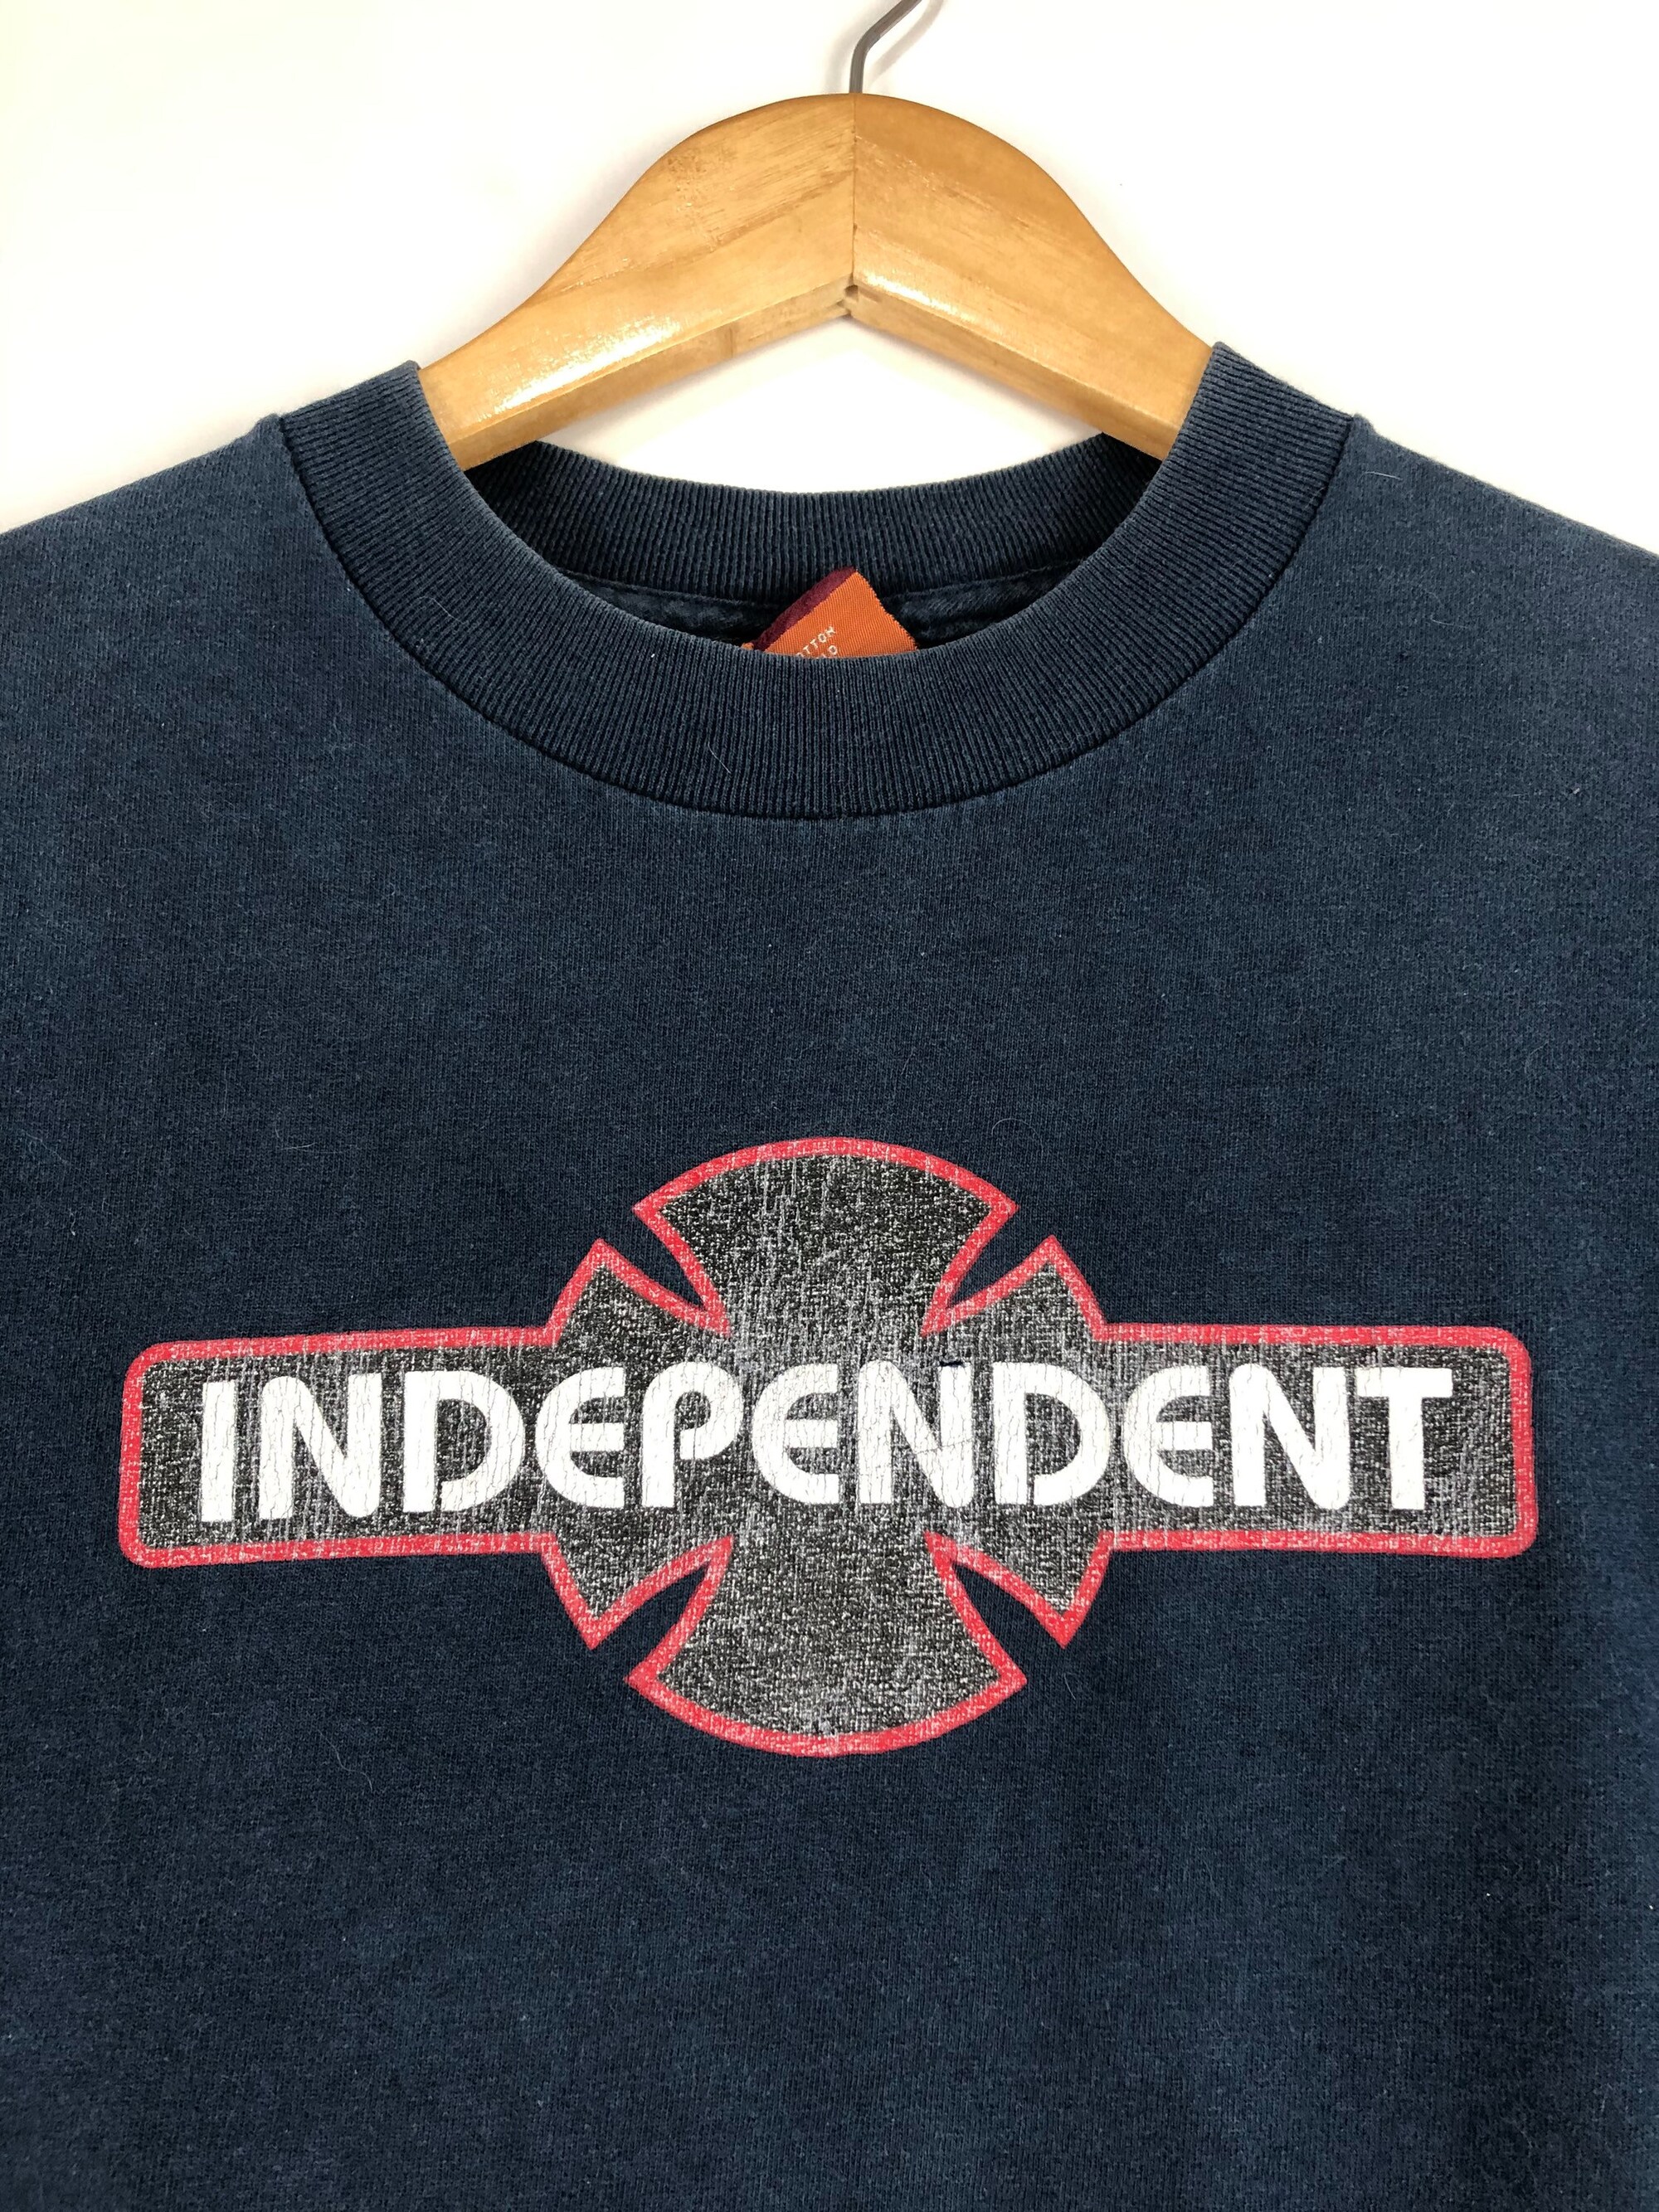 Vintage Independent T-Shirt Skateboards